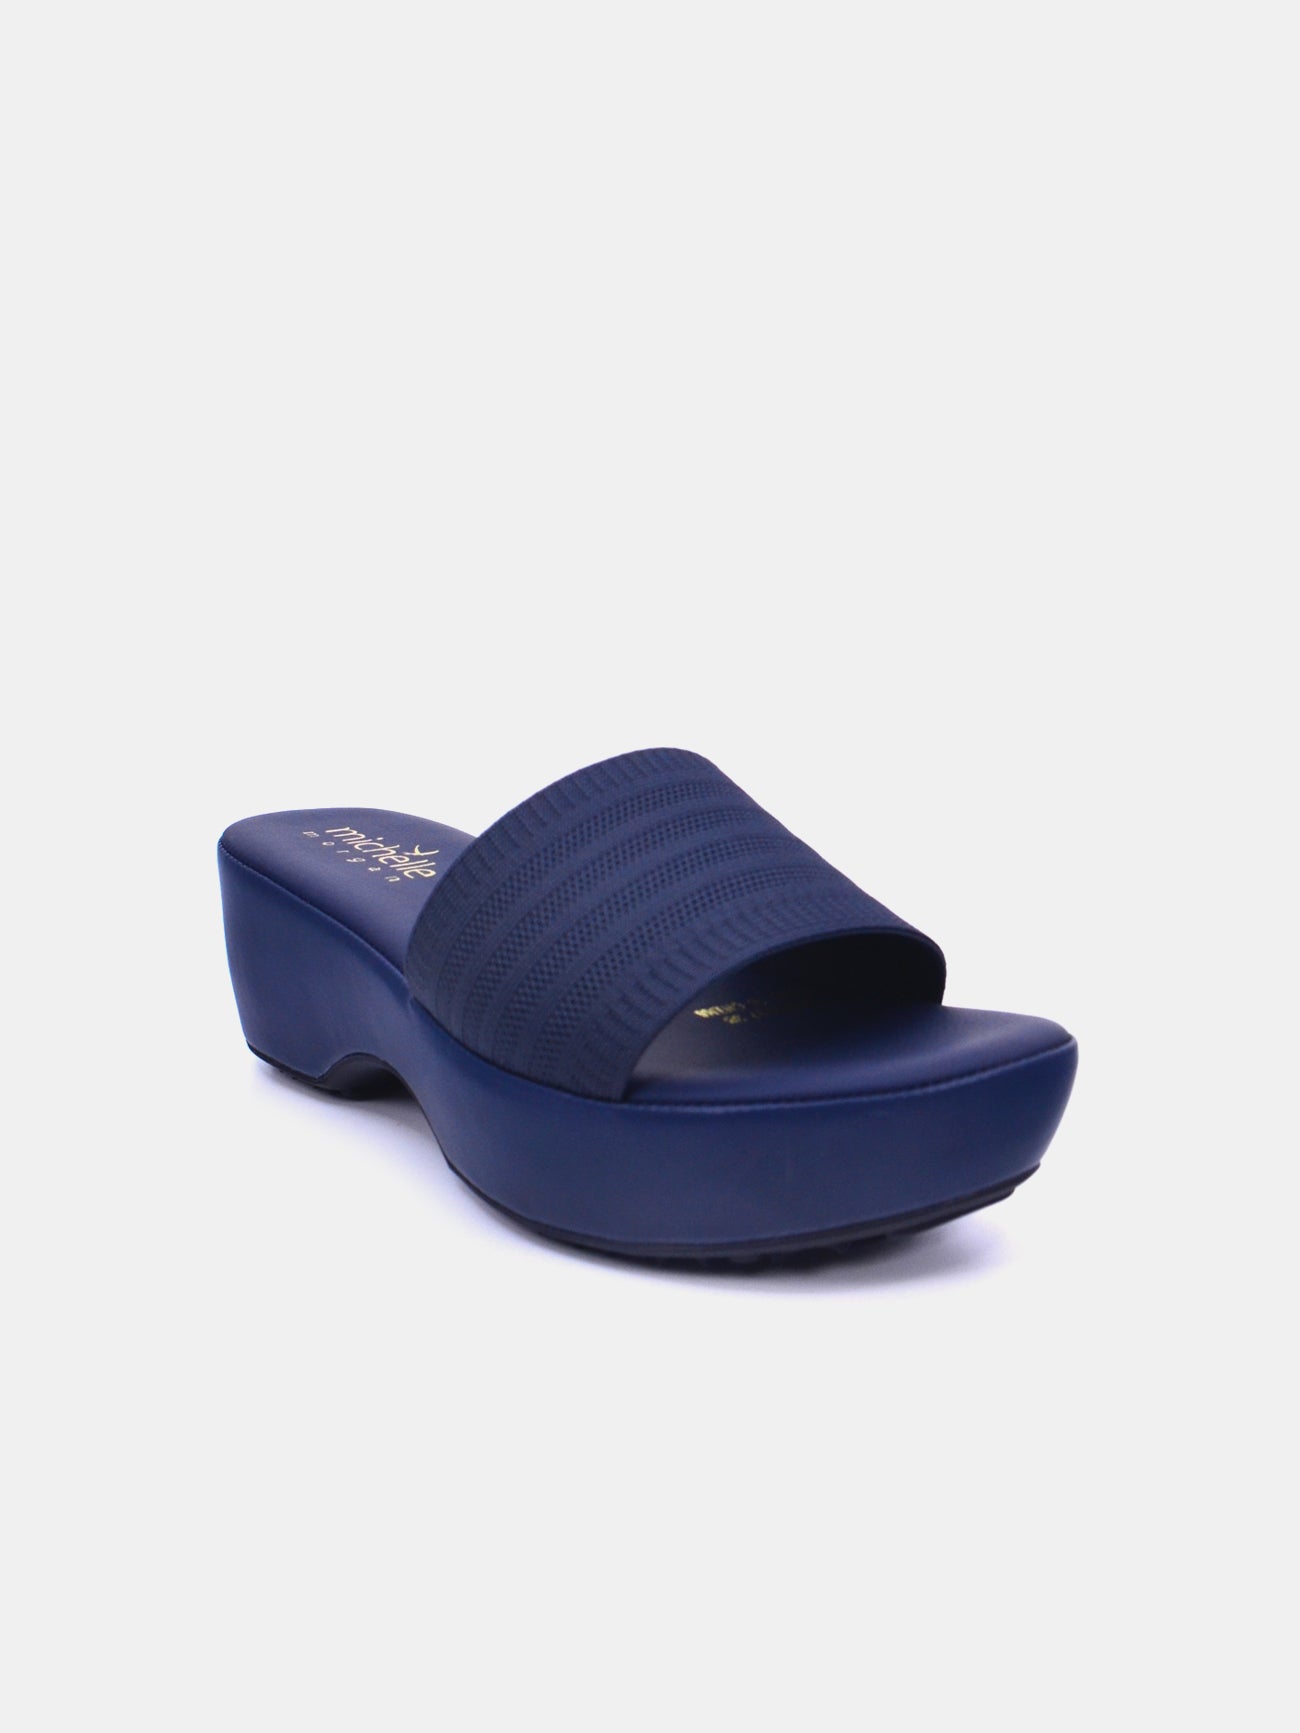 Michelle Morgan 214RJL17 Women's Heeled Sandals #color_Blue